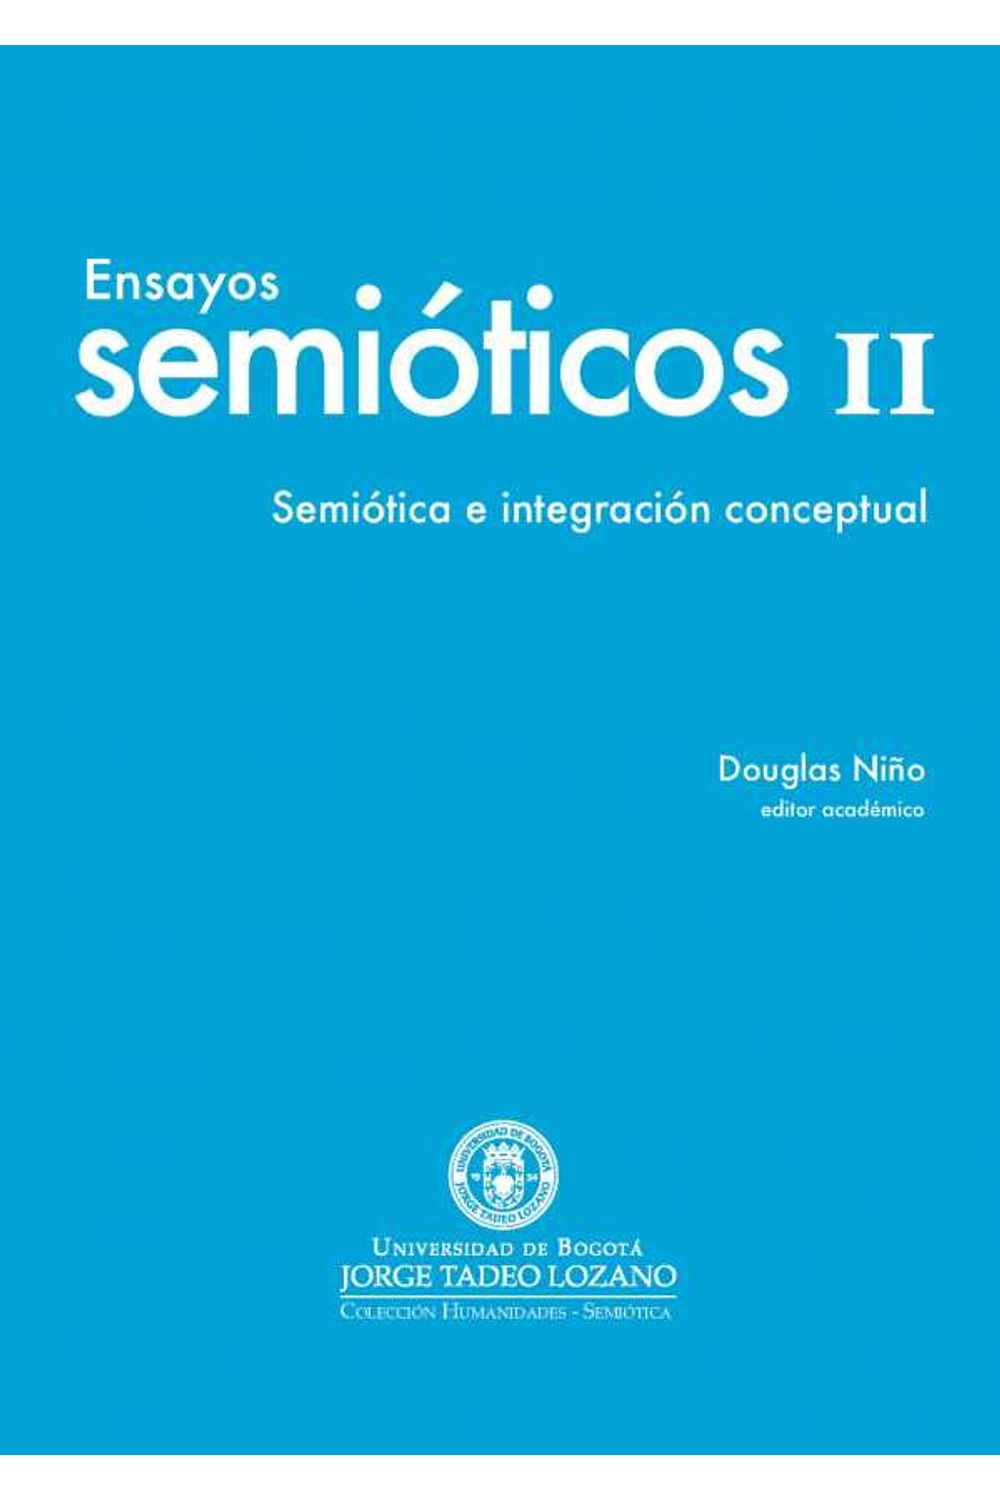 bw-ensayos-semioacuteticos-ii-editorial-utadeo-9789587251241